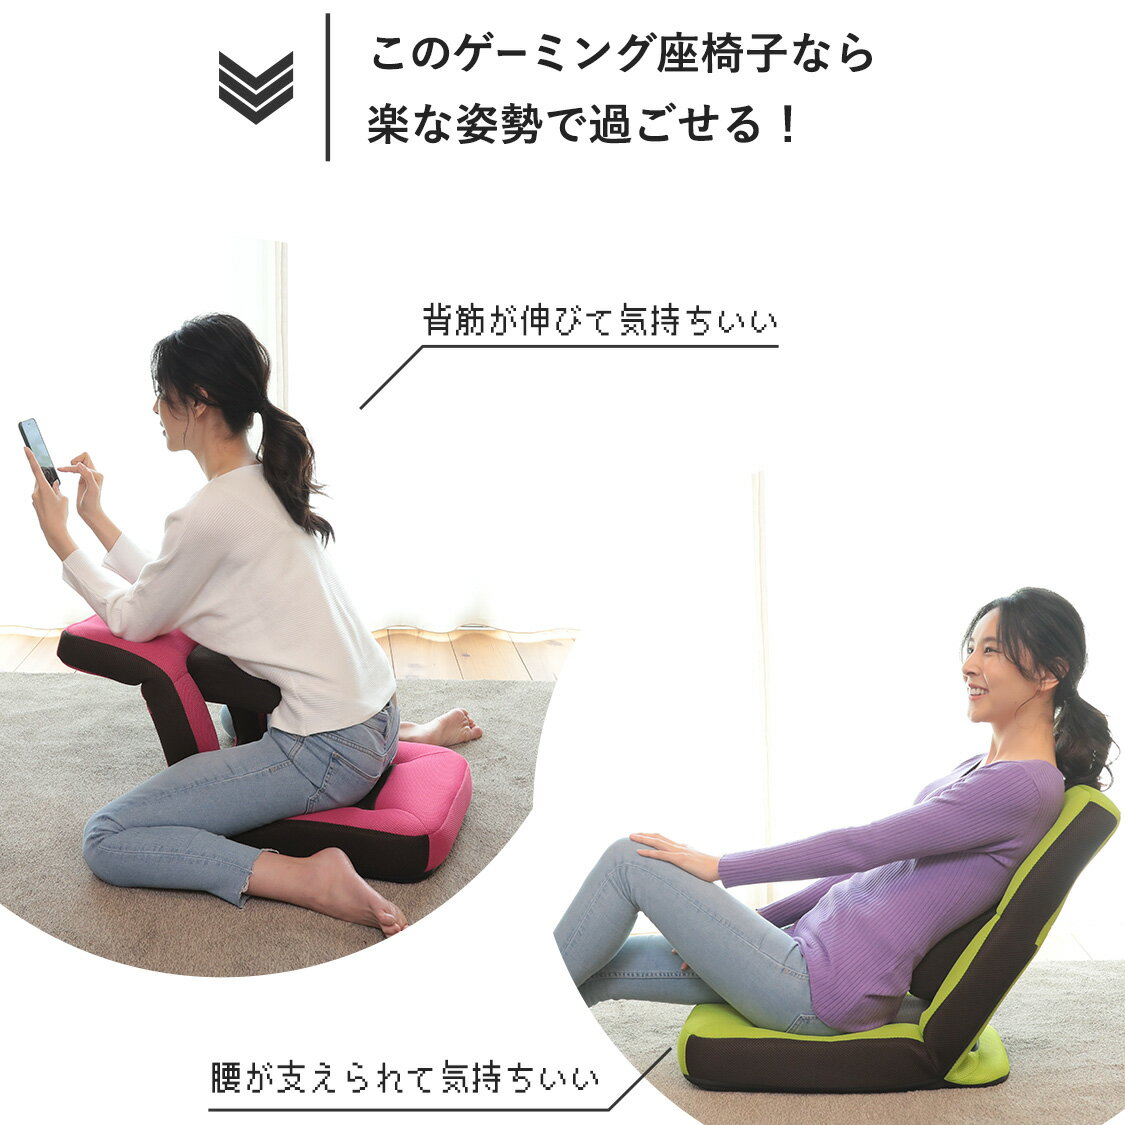 腰と背中がスッキリするゲーミング座椅子 ZZZ アロー | 一人用 座椅子 かわいい 椅子 低い椅子 いす おしゃれ リクライニング ゲーム ゲーミング イス チェア 腰 コンパクト リクライニングチェア ゲーミングチェア パーソナルチェア 腰痛 メッシュ 韓国 収納 ゲームチェア